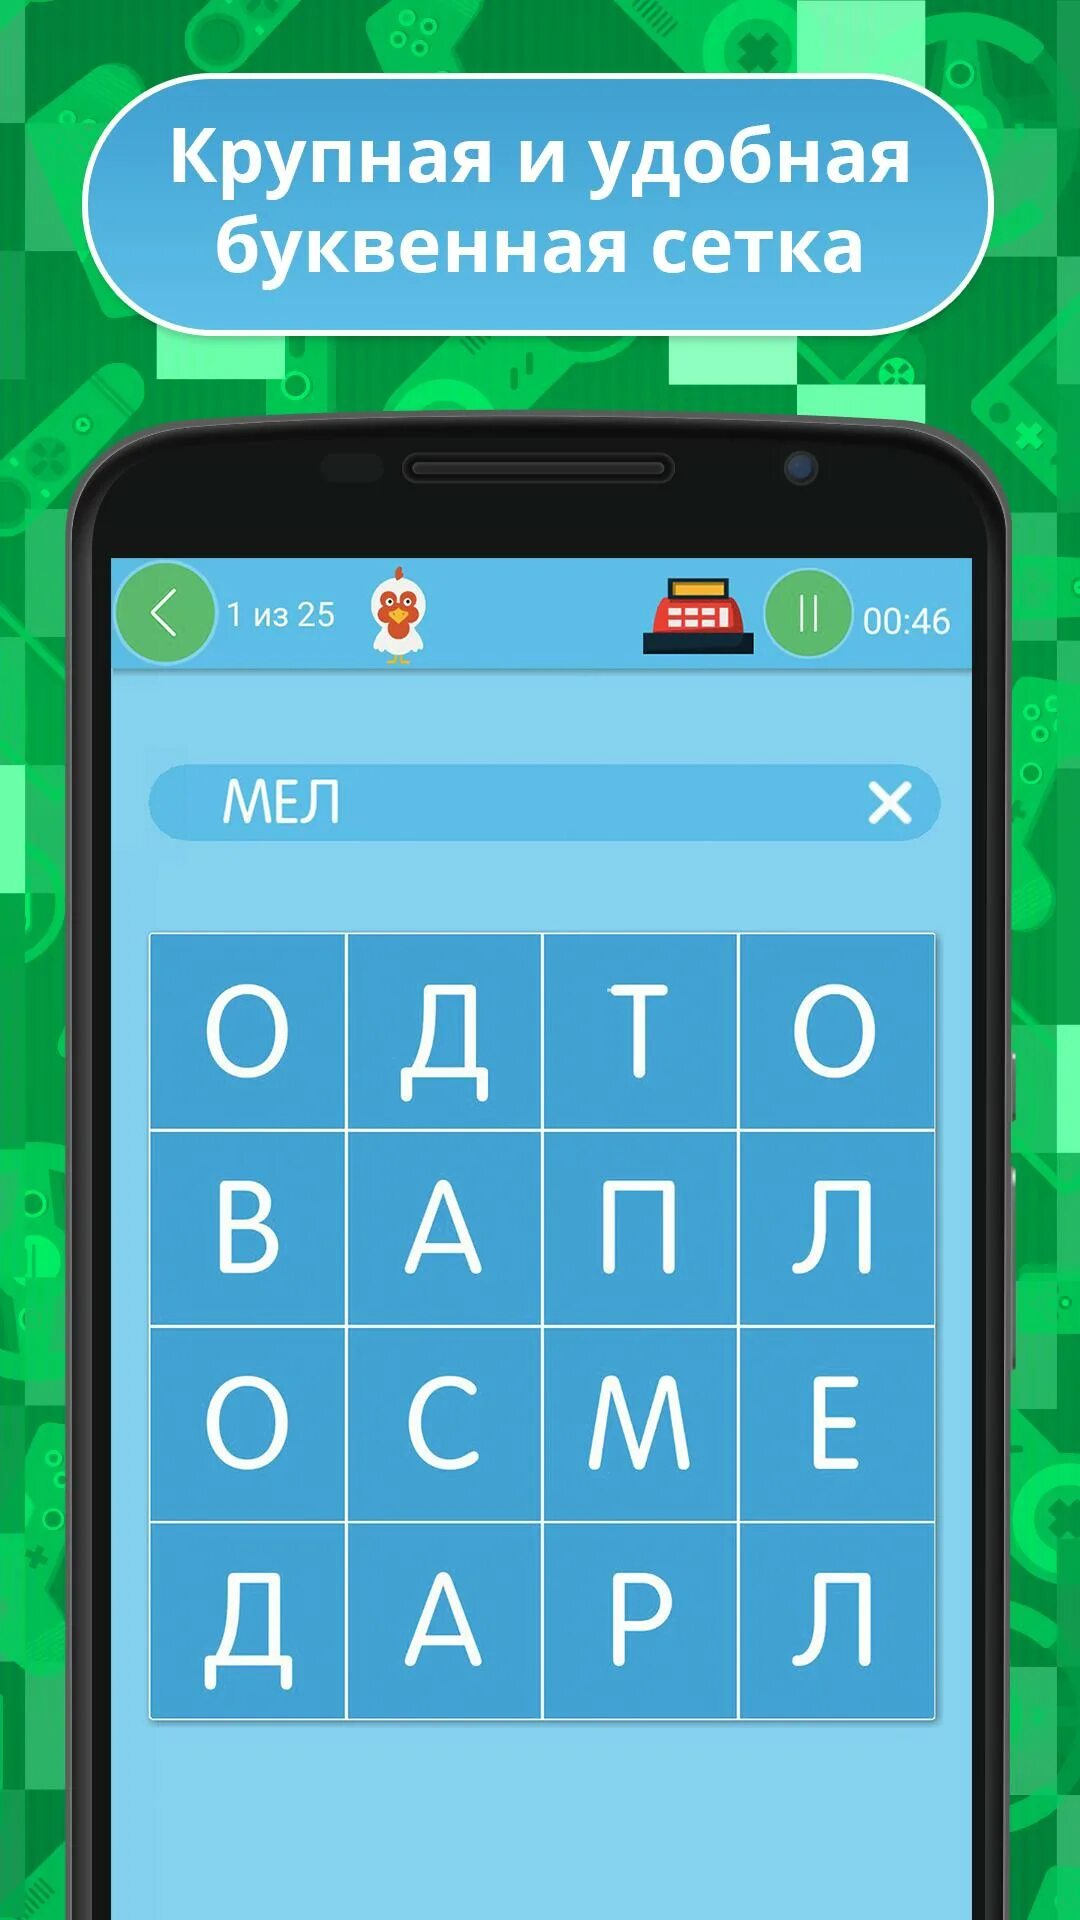 Тогда отгадай. Филворды. Игра Угадай слово Филворды. Филворд на андроид на русском языке.